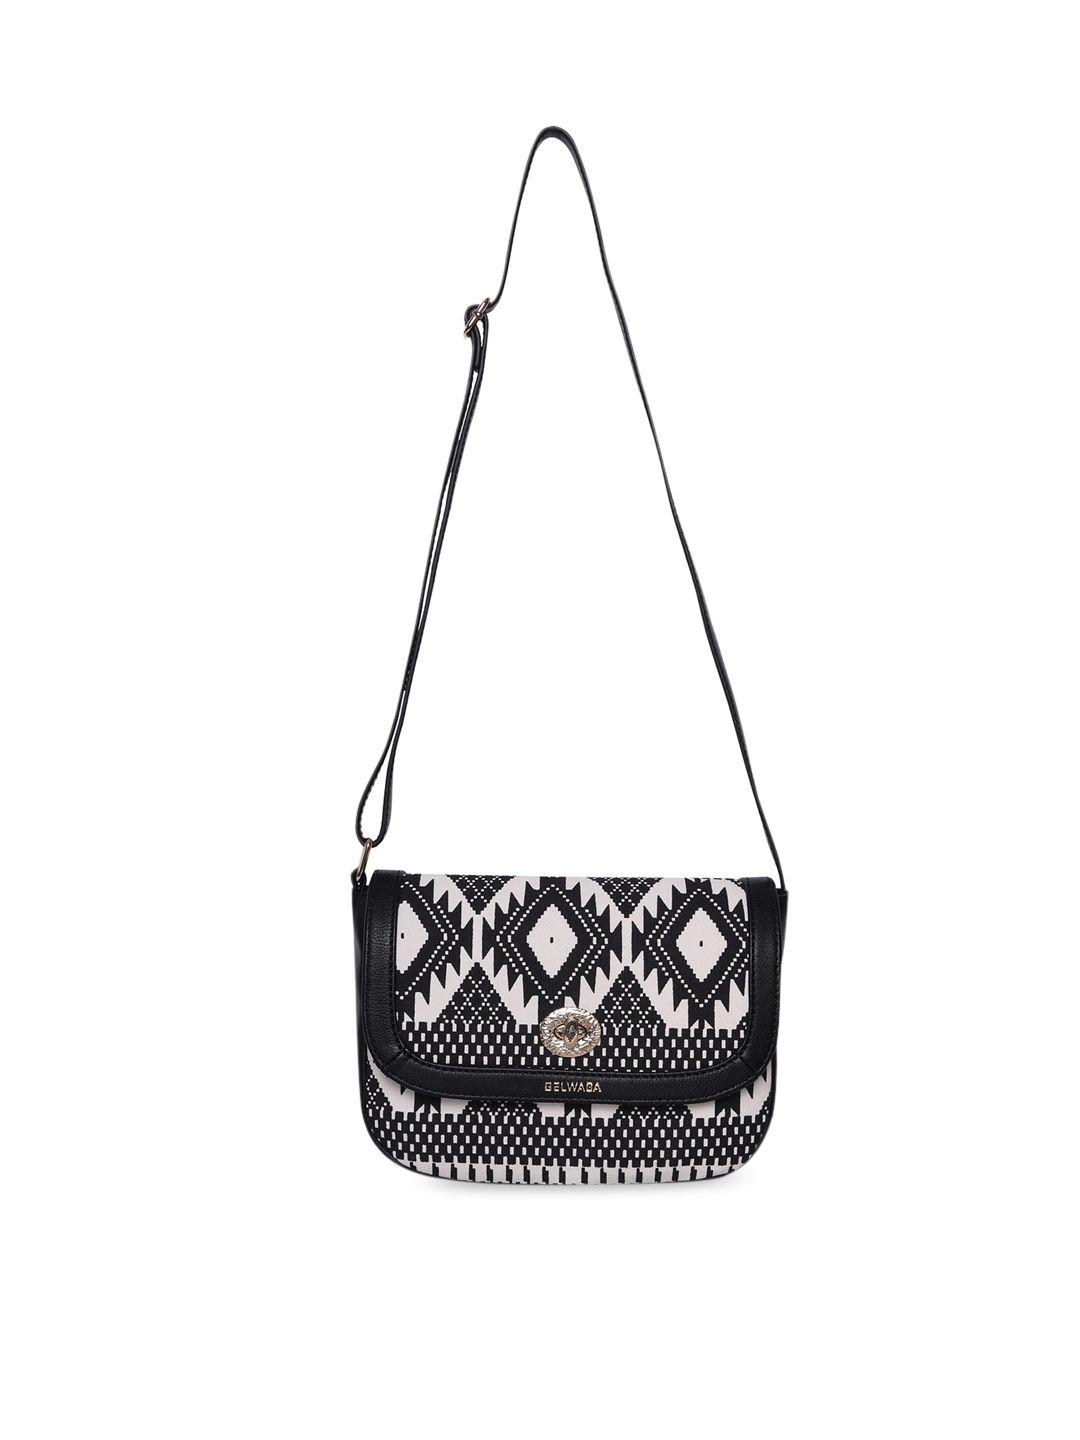 belwaba black geometric printed structured sling bag